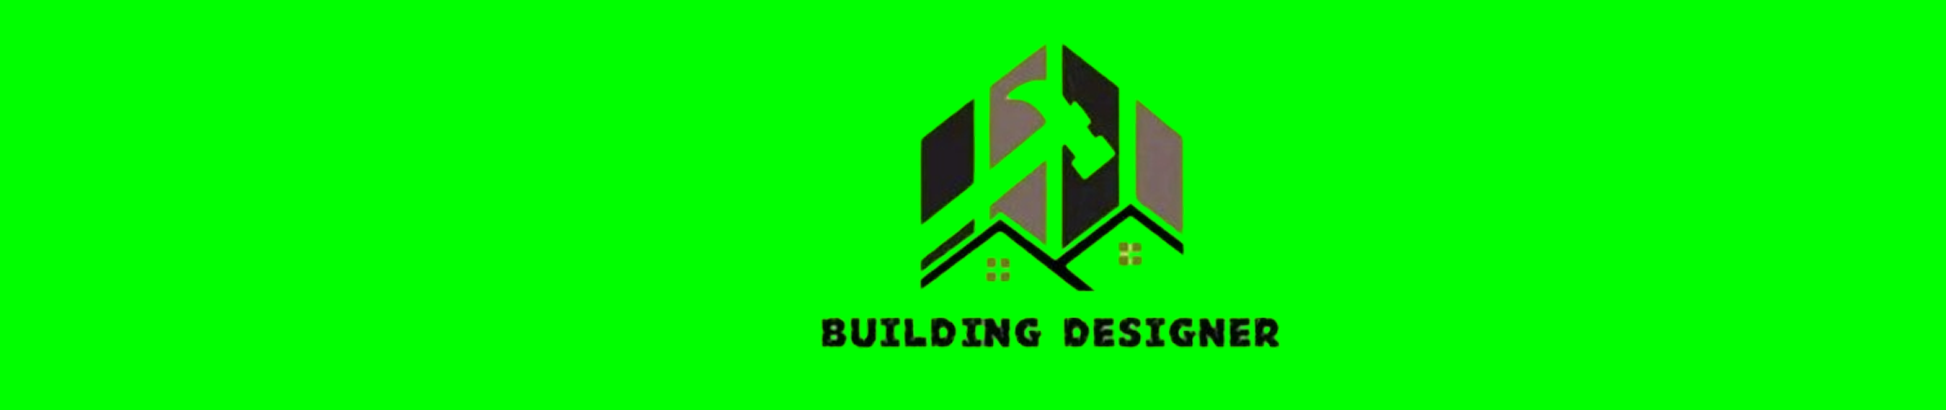 BUILDING DESIGNER's profile banner